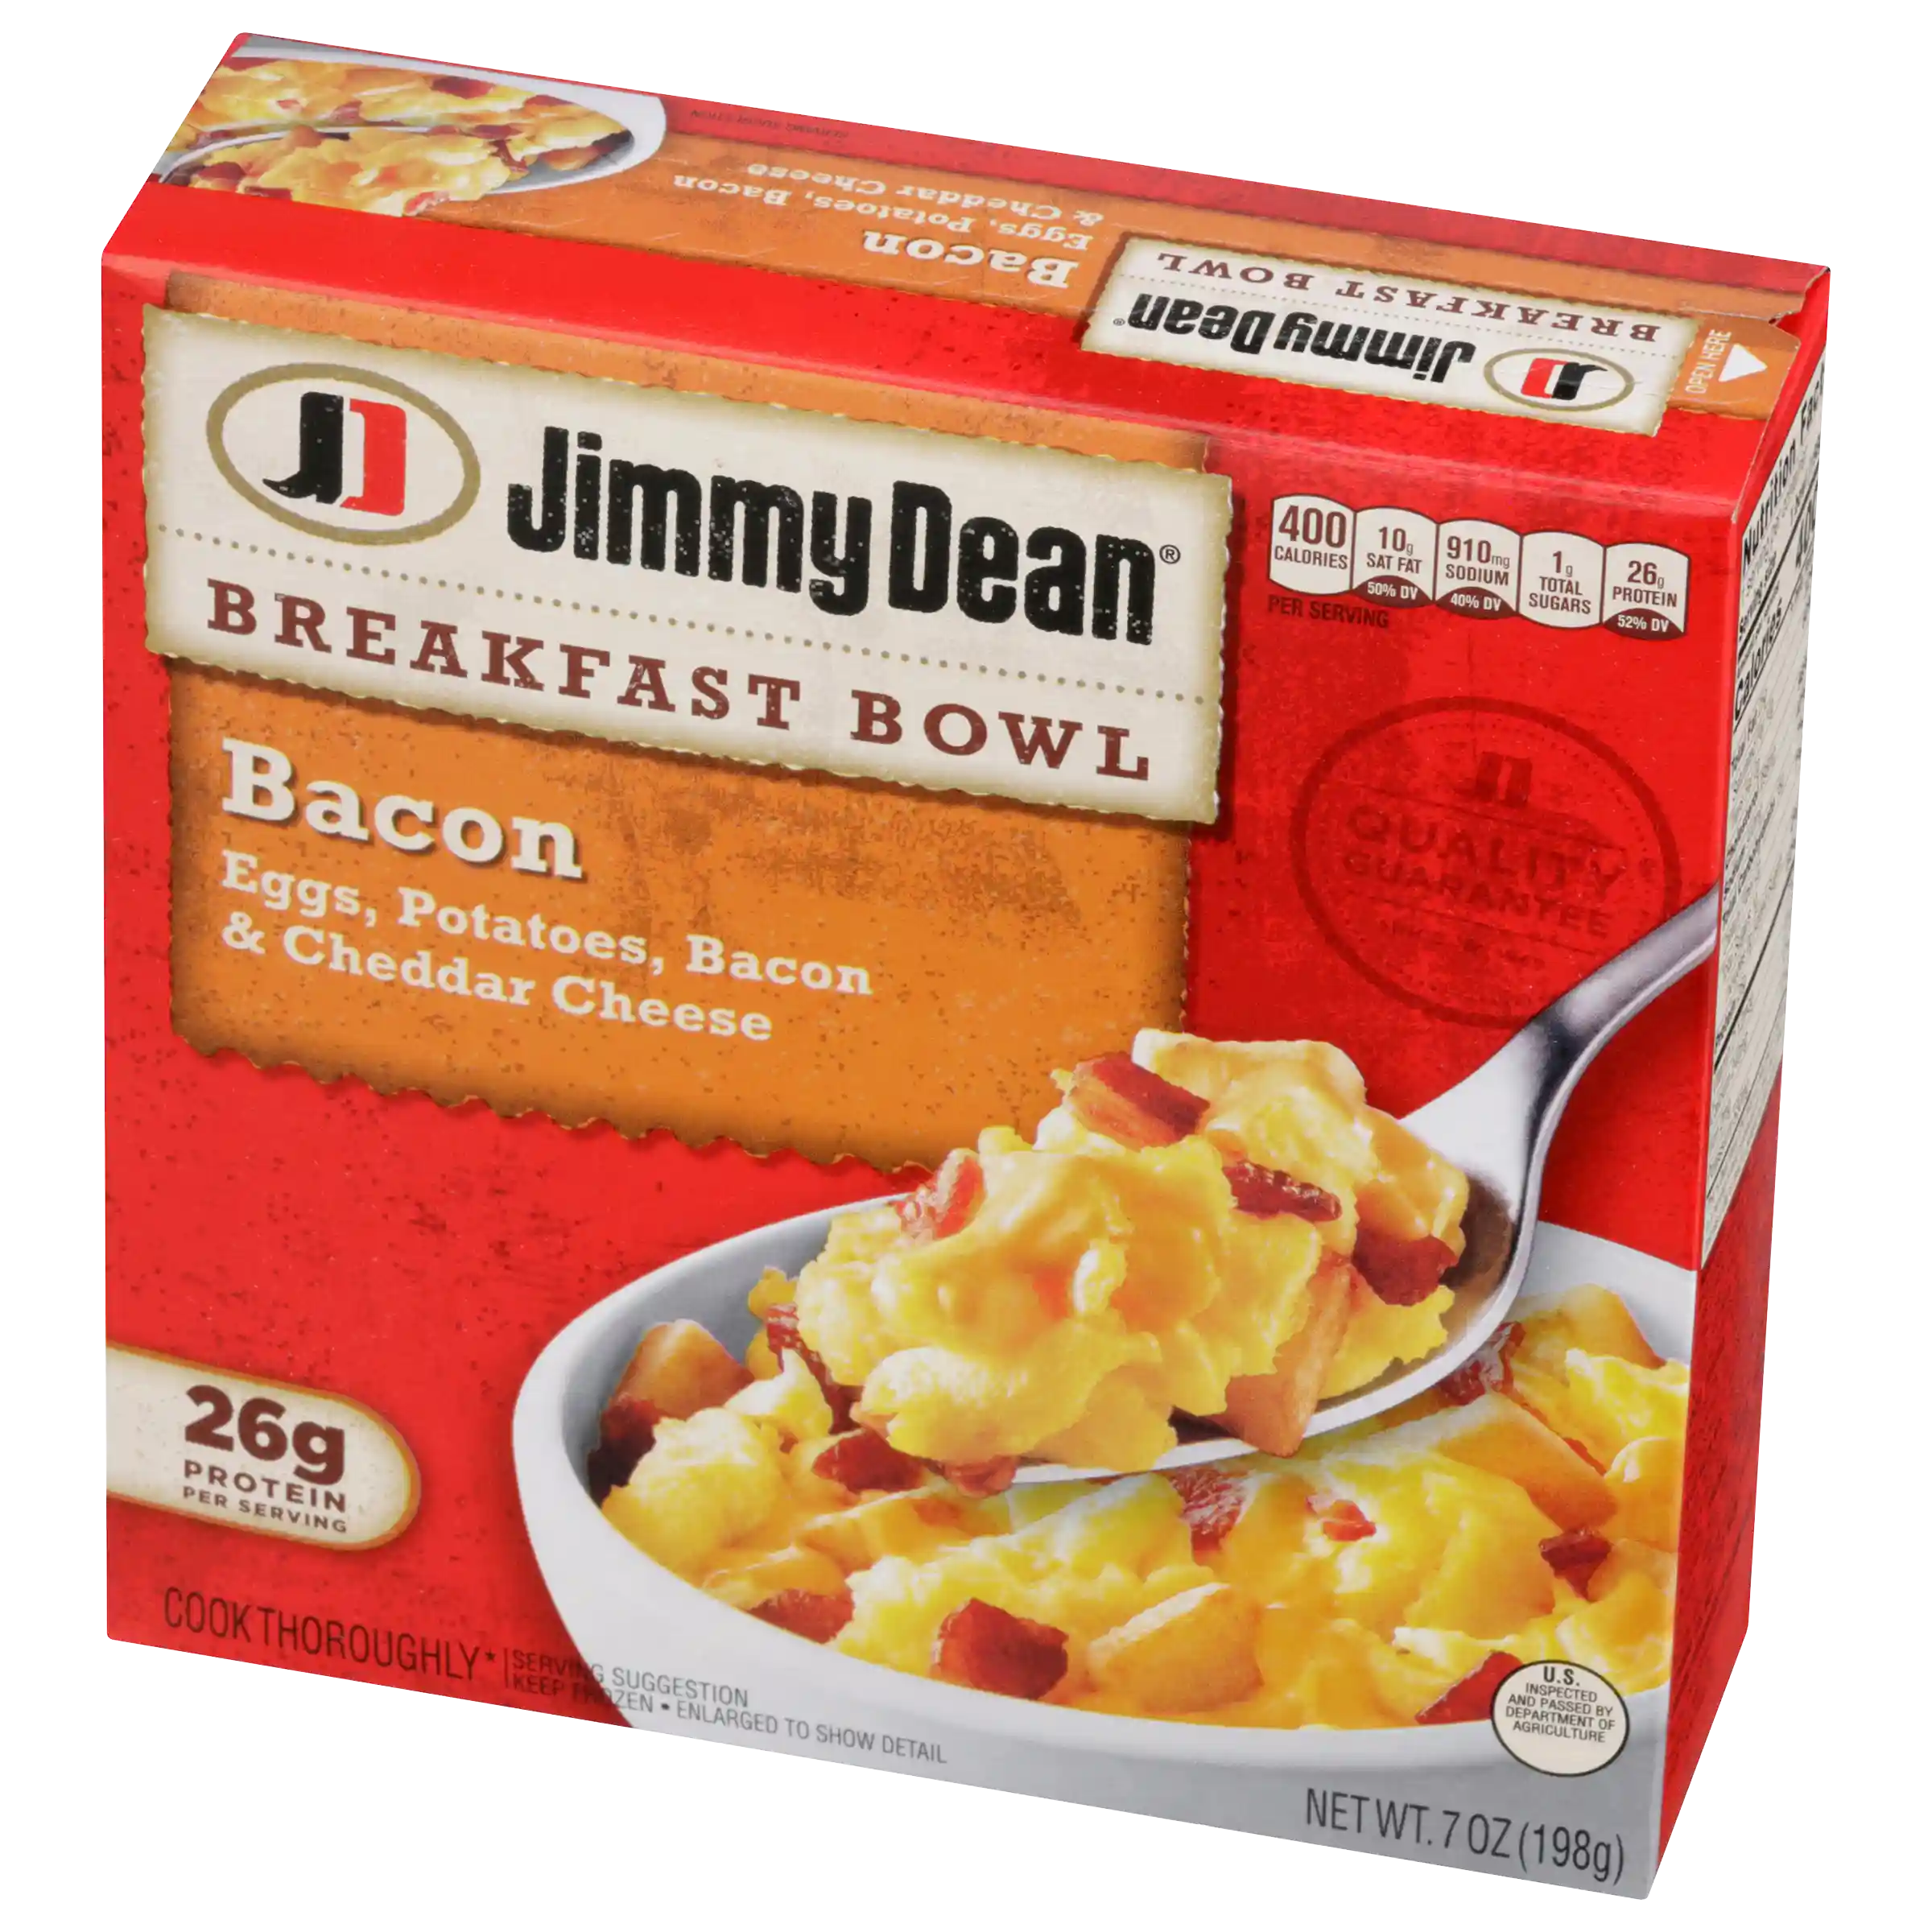  Jimmy Dean Breakfast Bowl, Bacon_image_11